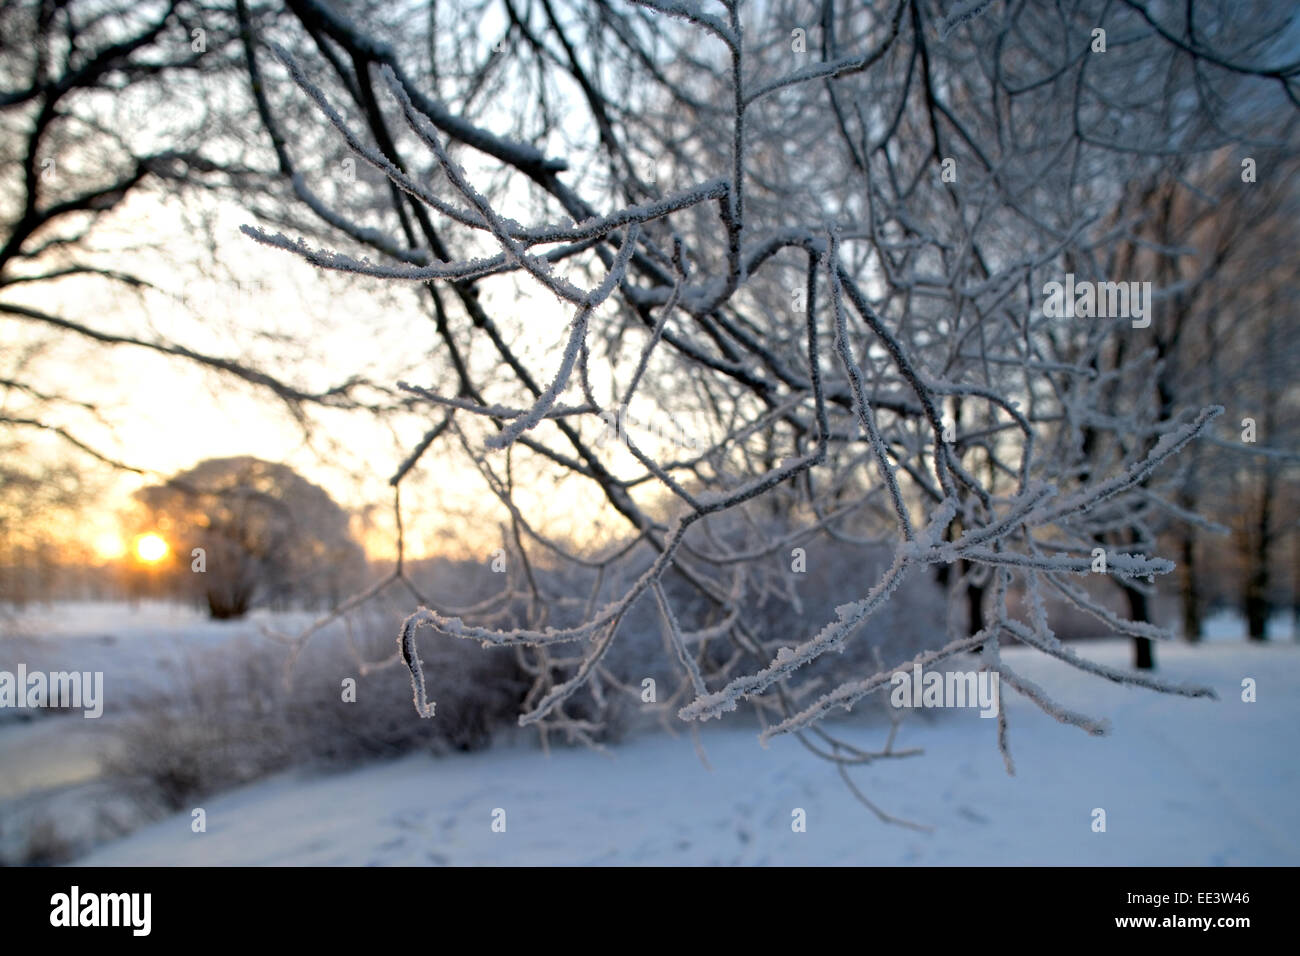 Kalten Wintertag, schöne Raureif und Raureif auf Bäumen. blauer Himmel Wolken Baum Saison Winter Zweig Rime Schnee Frost kalte weiße blu Stockfoto